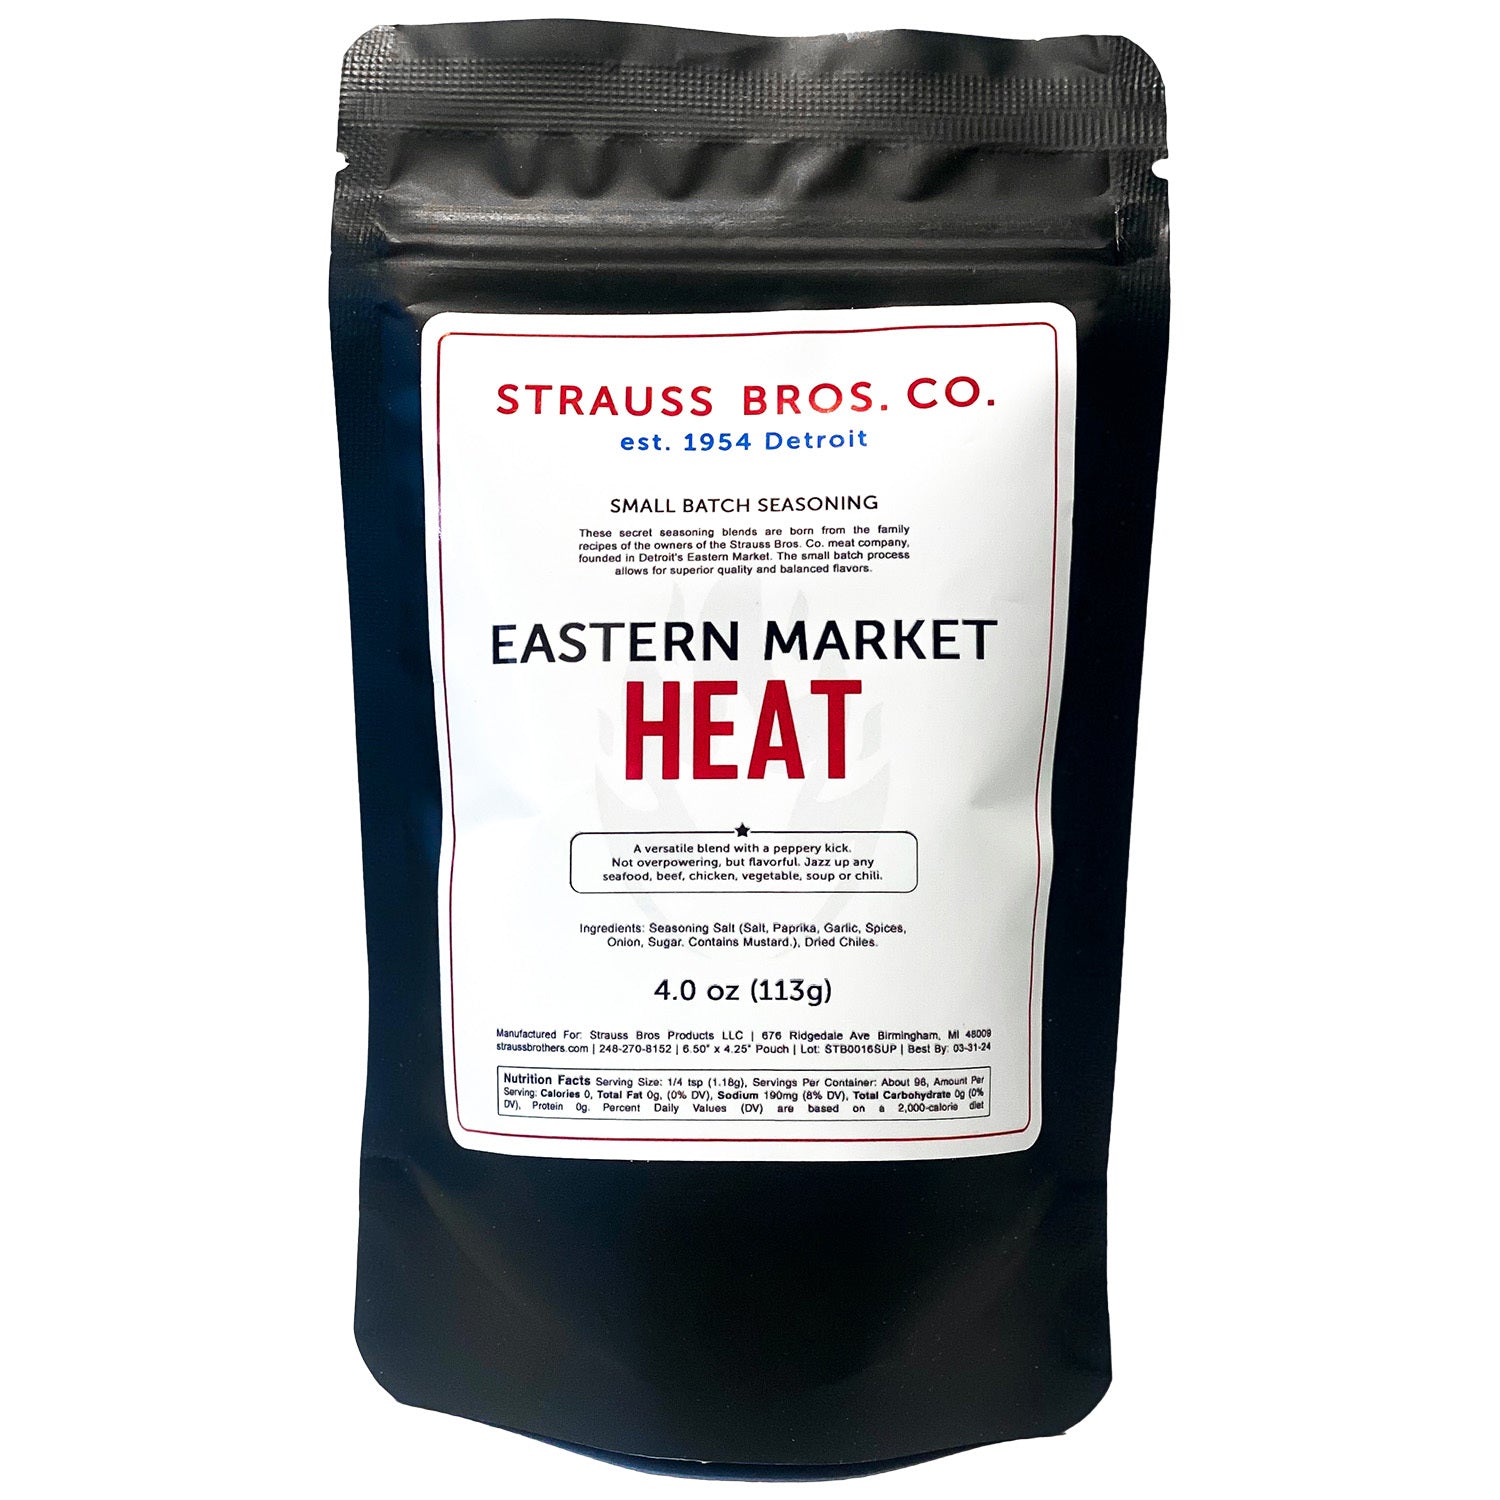 Eastern Market Heat